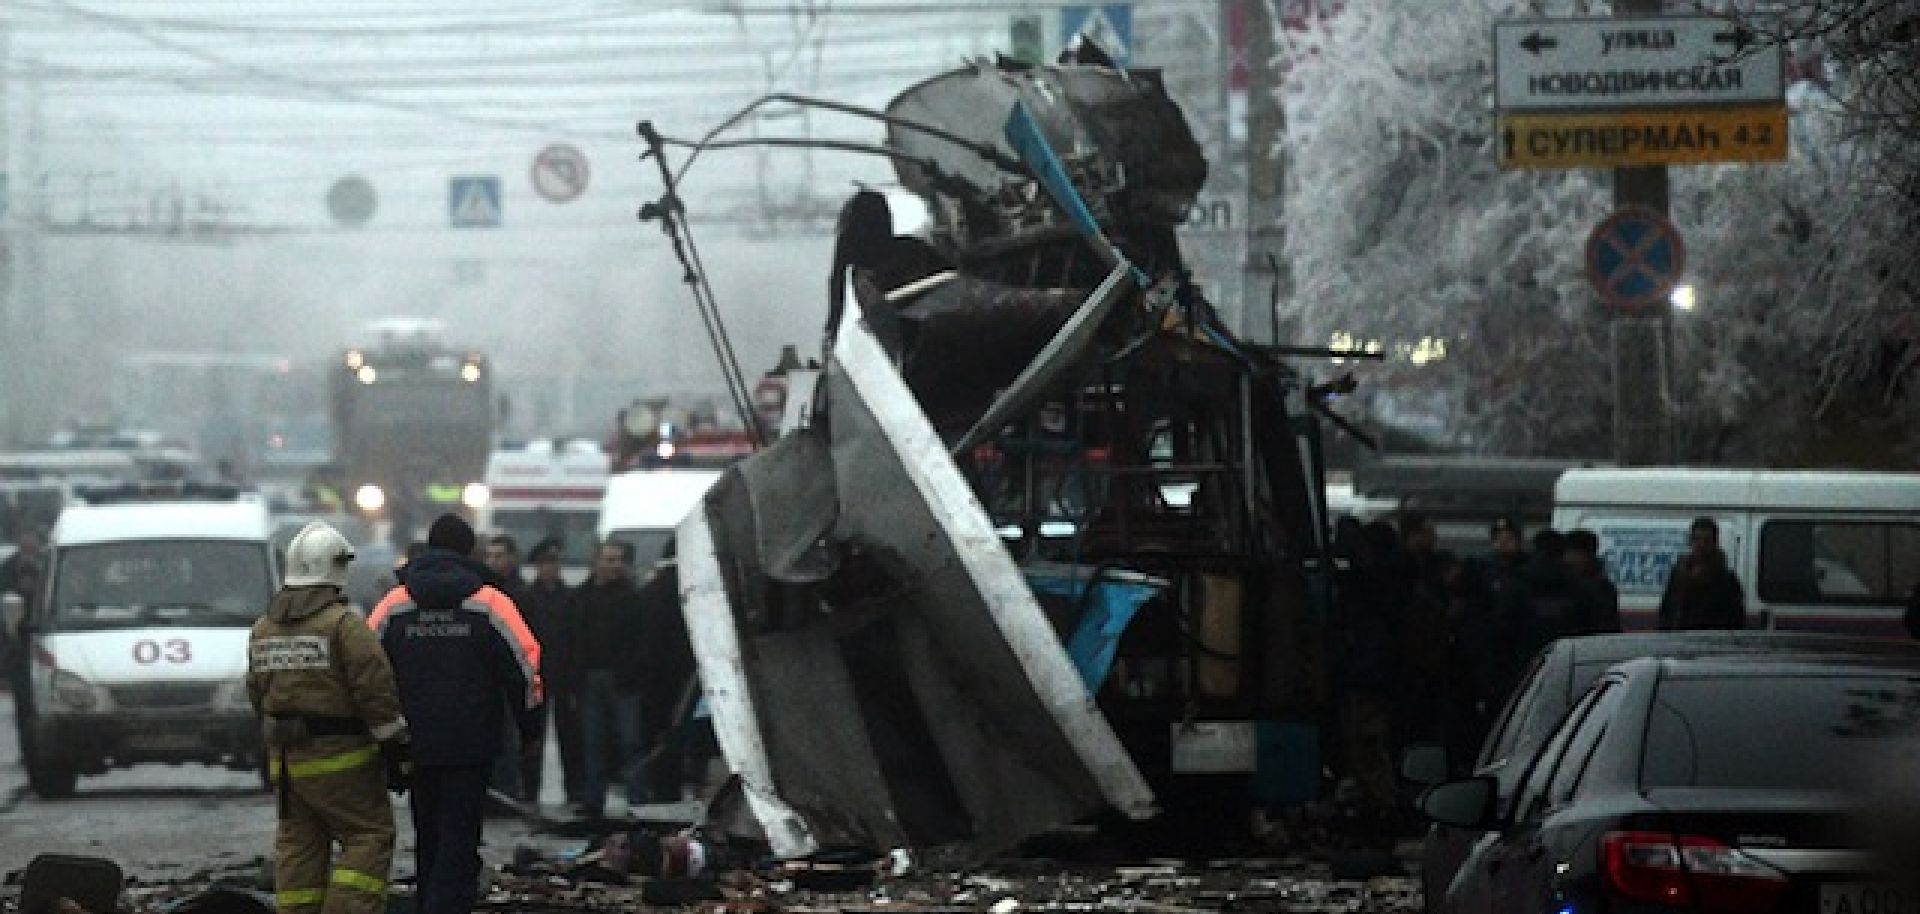 Russia: A Second Suicide Bombing in Volgograd